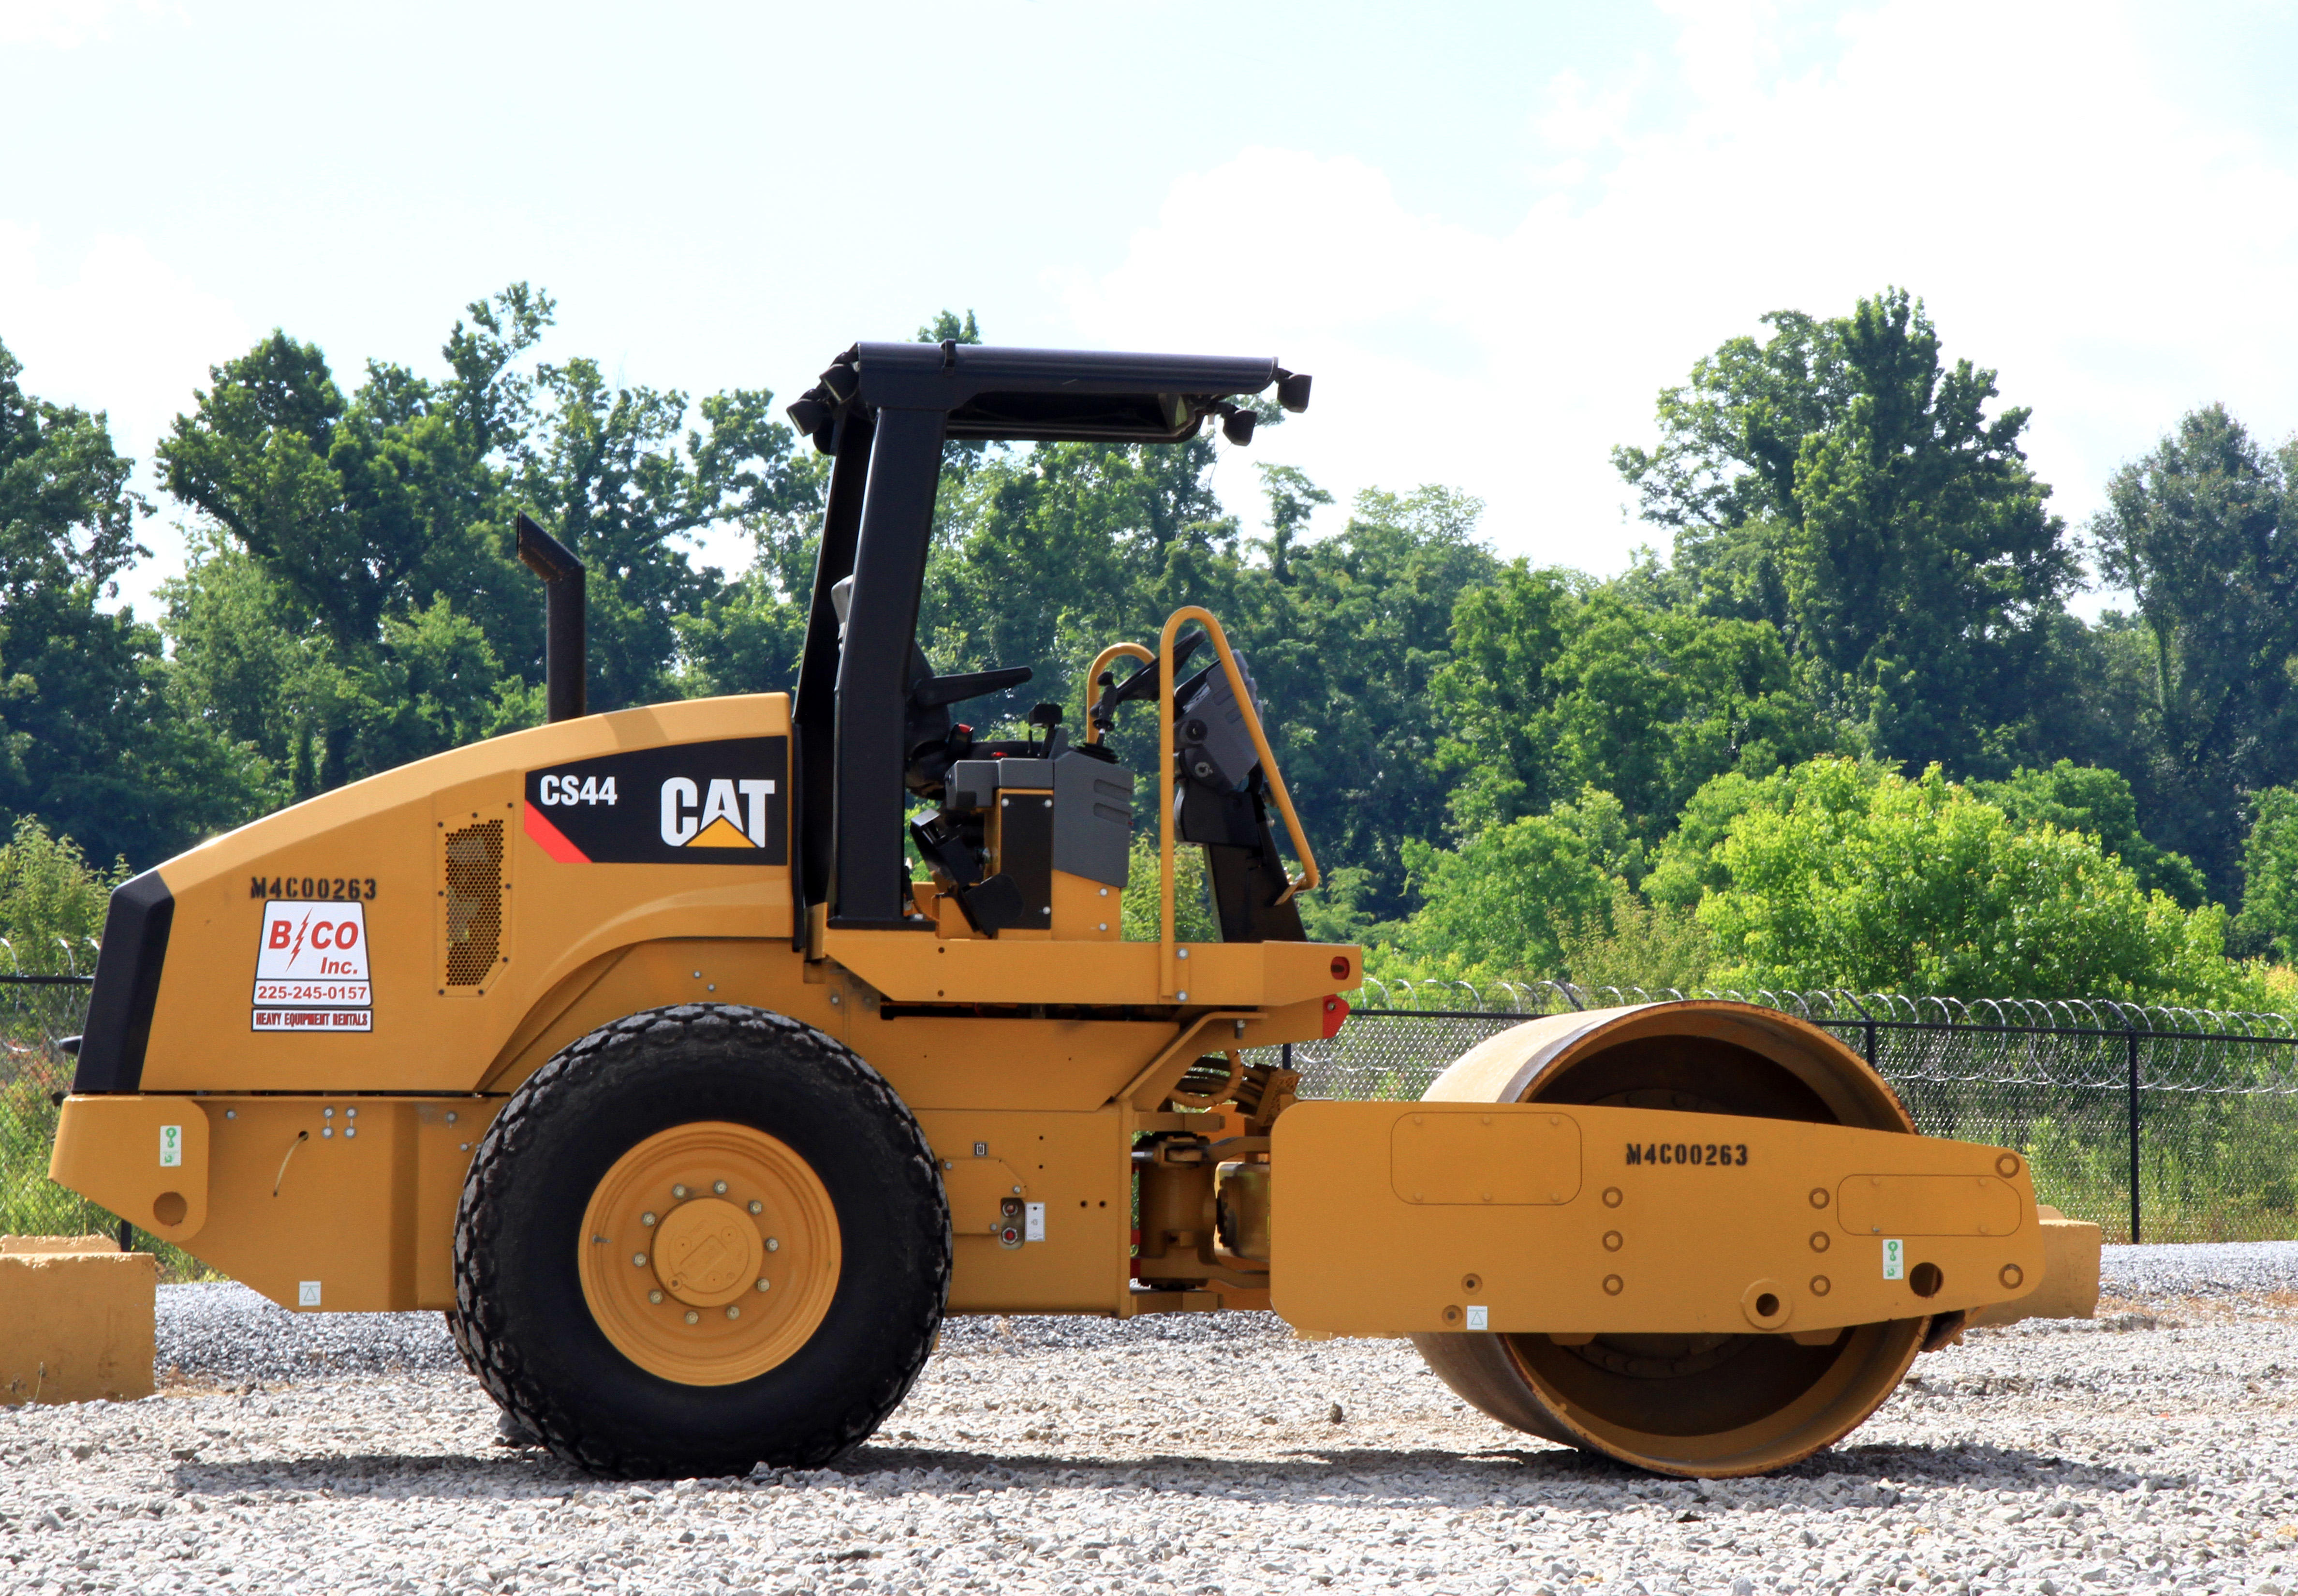 Cat CS44 Vibratory Soil Compactors | Caterpillar Equipment Rentals